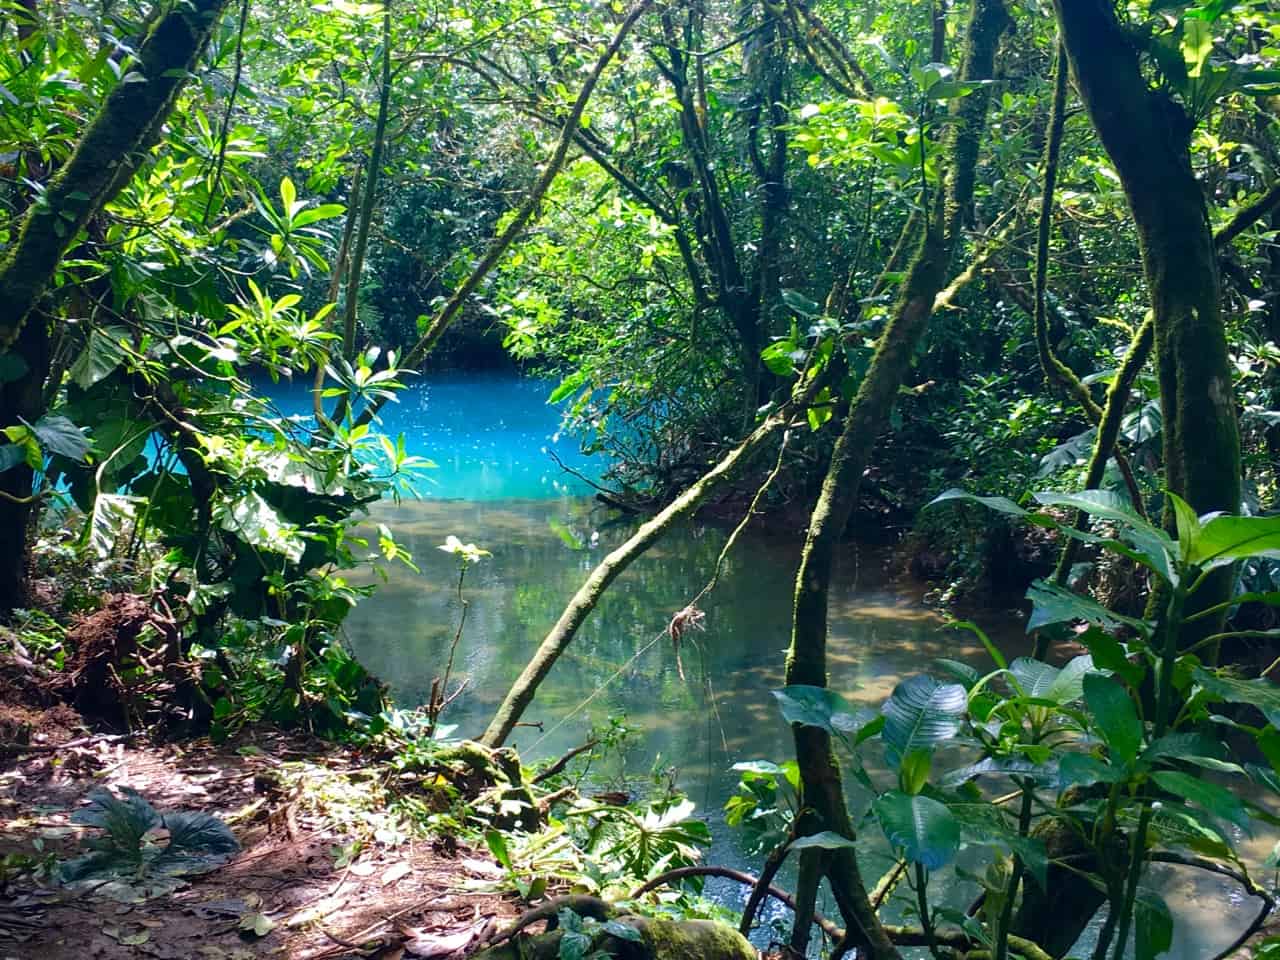  Los Teñidores in Costa Rica, wo sich zwei Flüsse mit klarem Wasser treffen und einer blau wird.